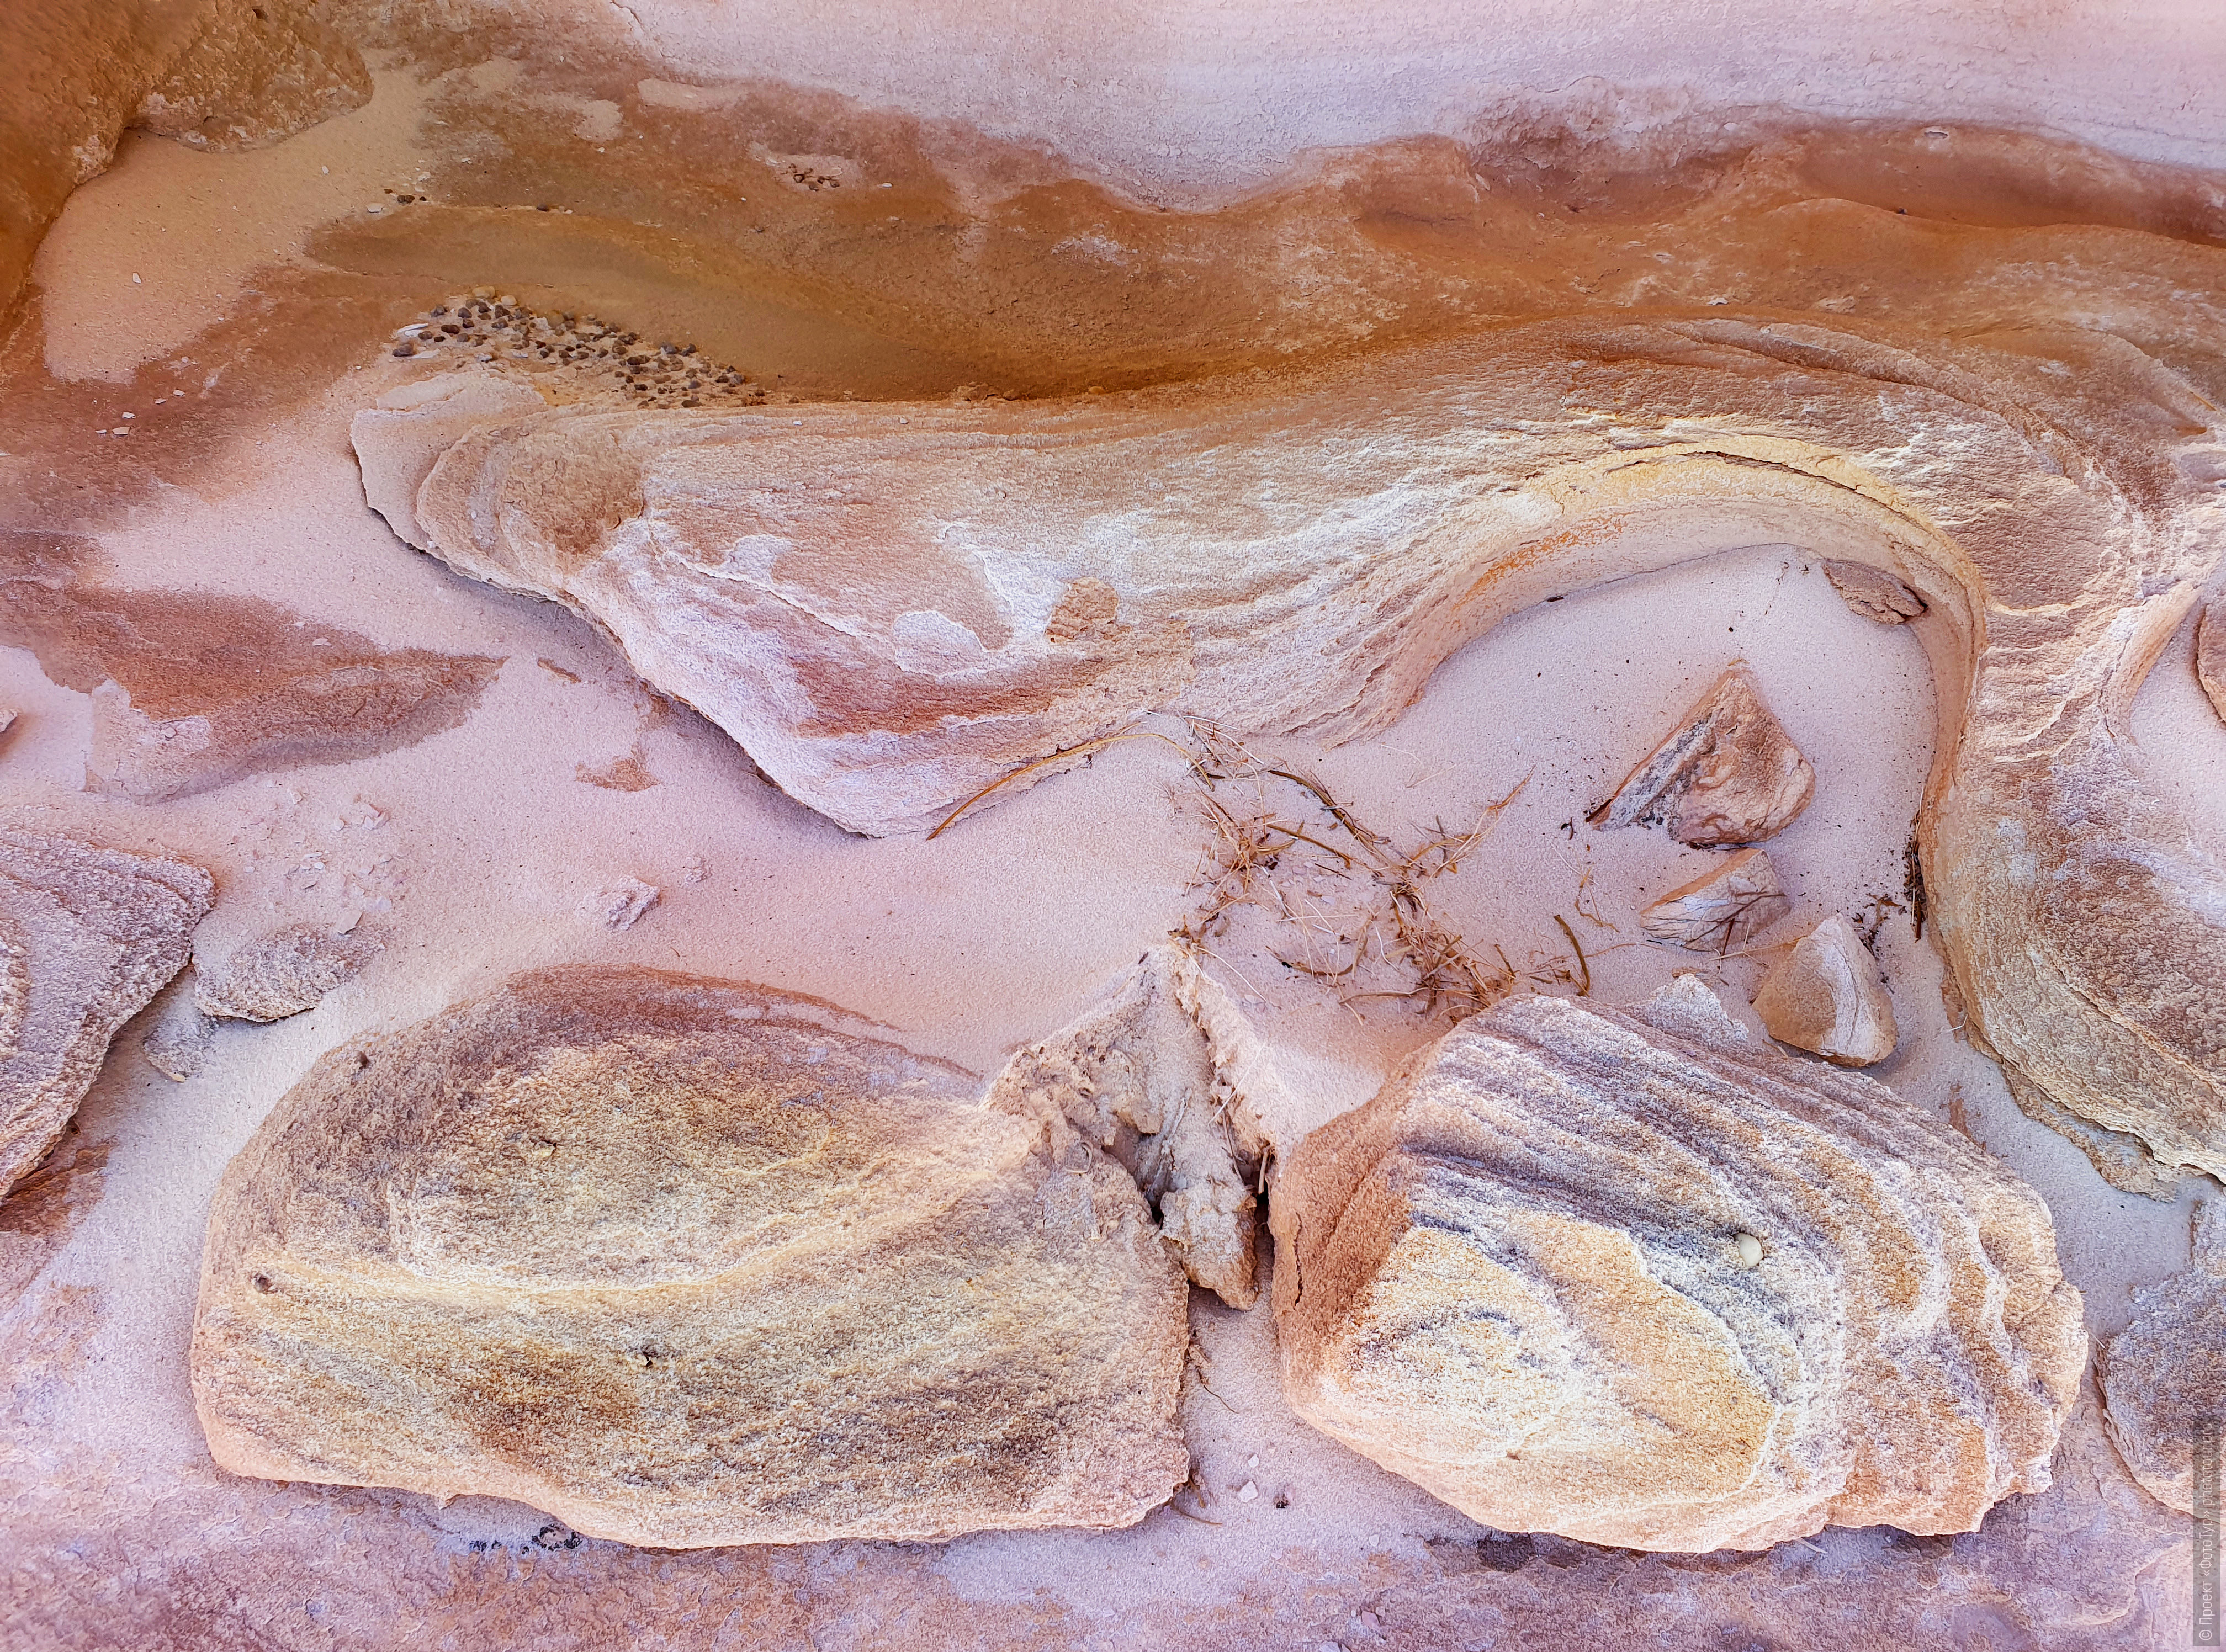 Натюрморт из ярких камней необычной формы на розовом песке в пустыне Синая, Дахаб, Египет.